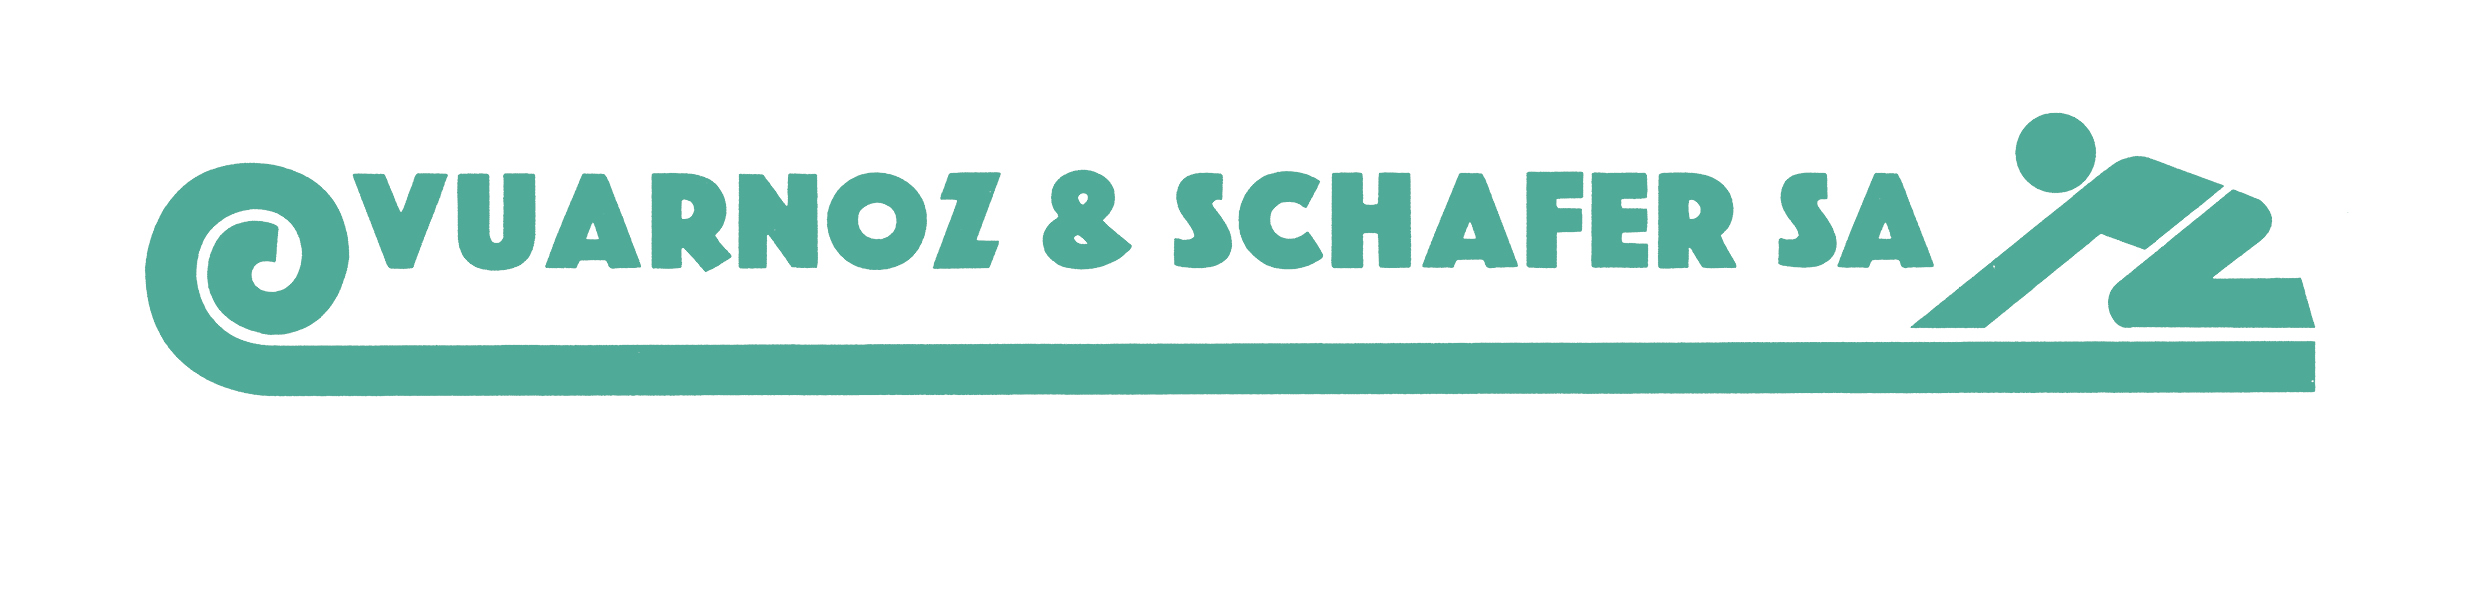 Vuarnoz & Schafer SA